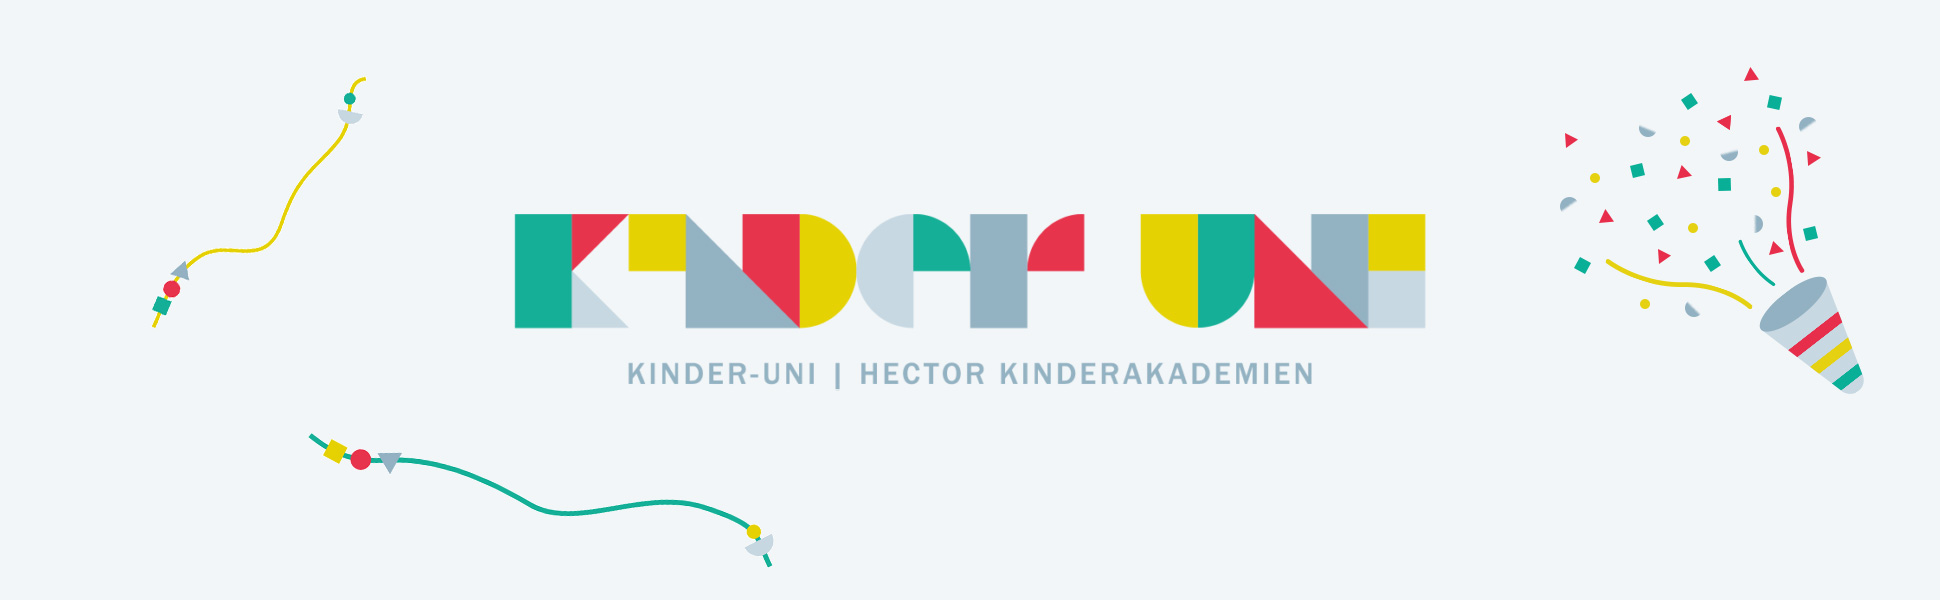 Die Kinder-Uni der Hector Kinderakademien